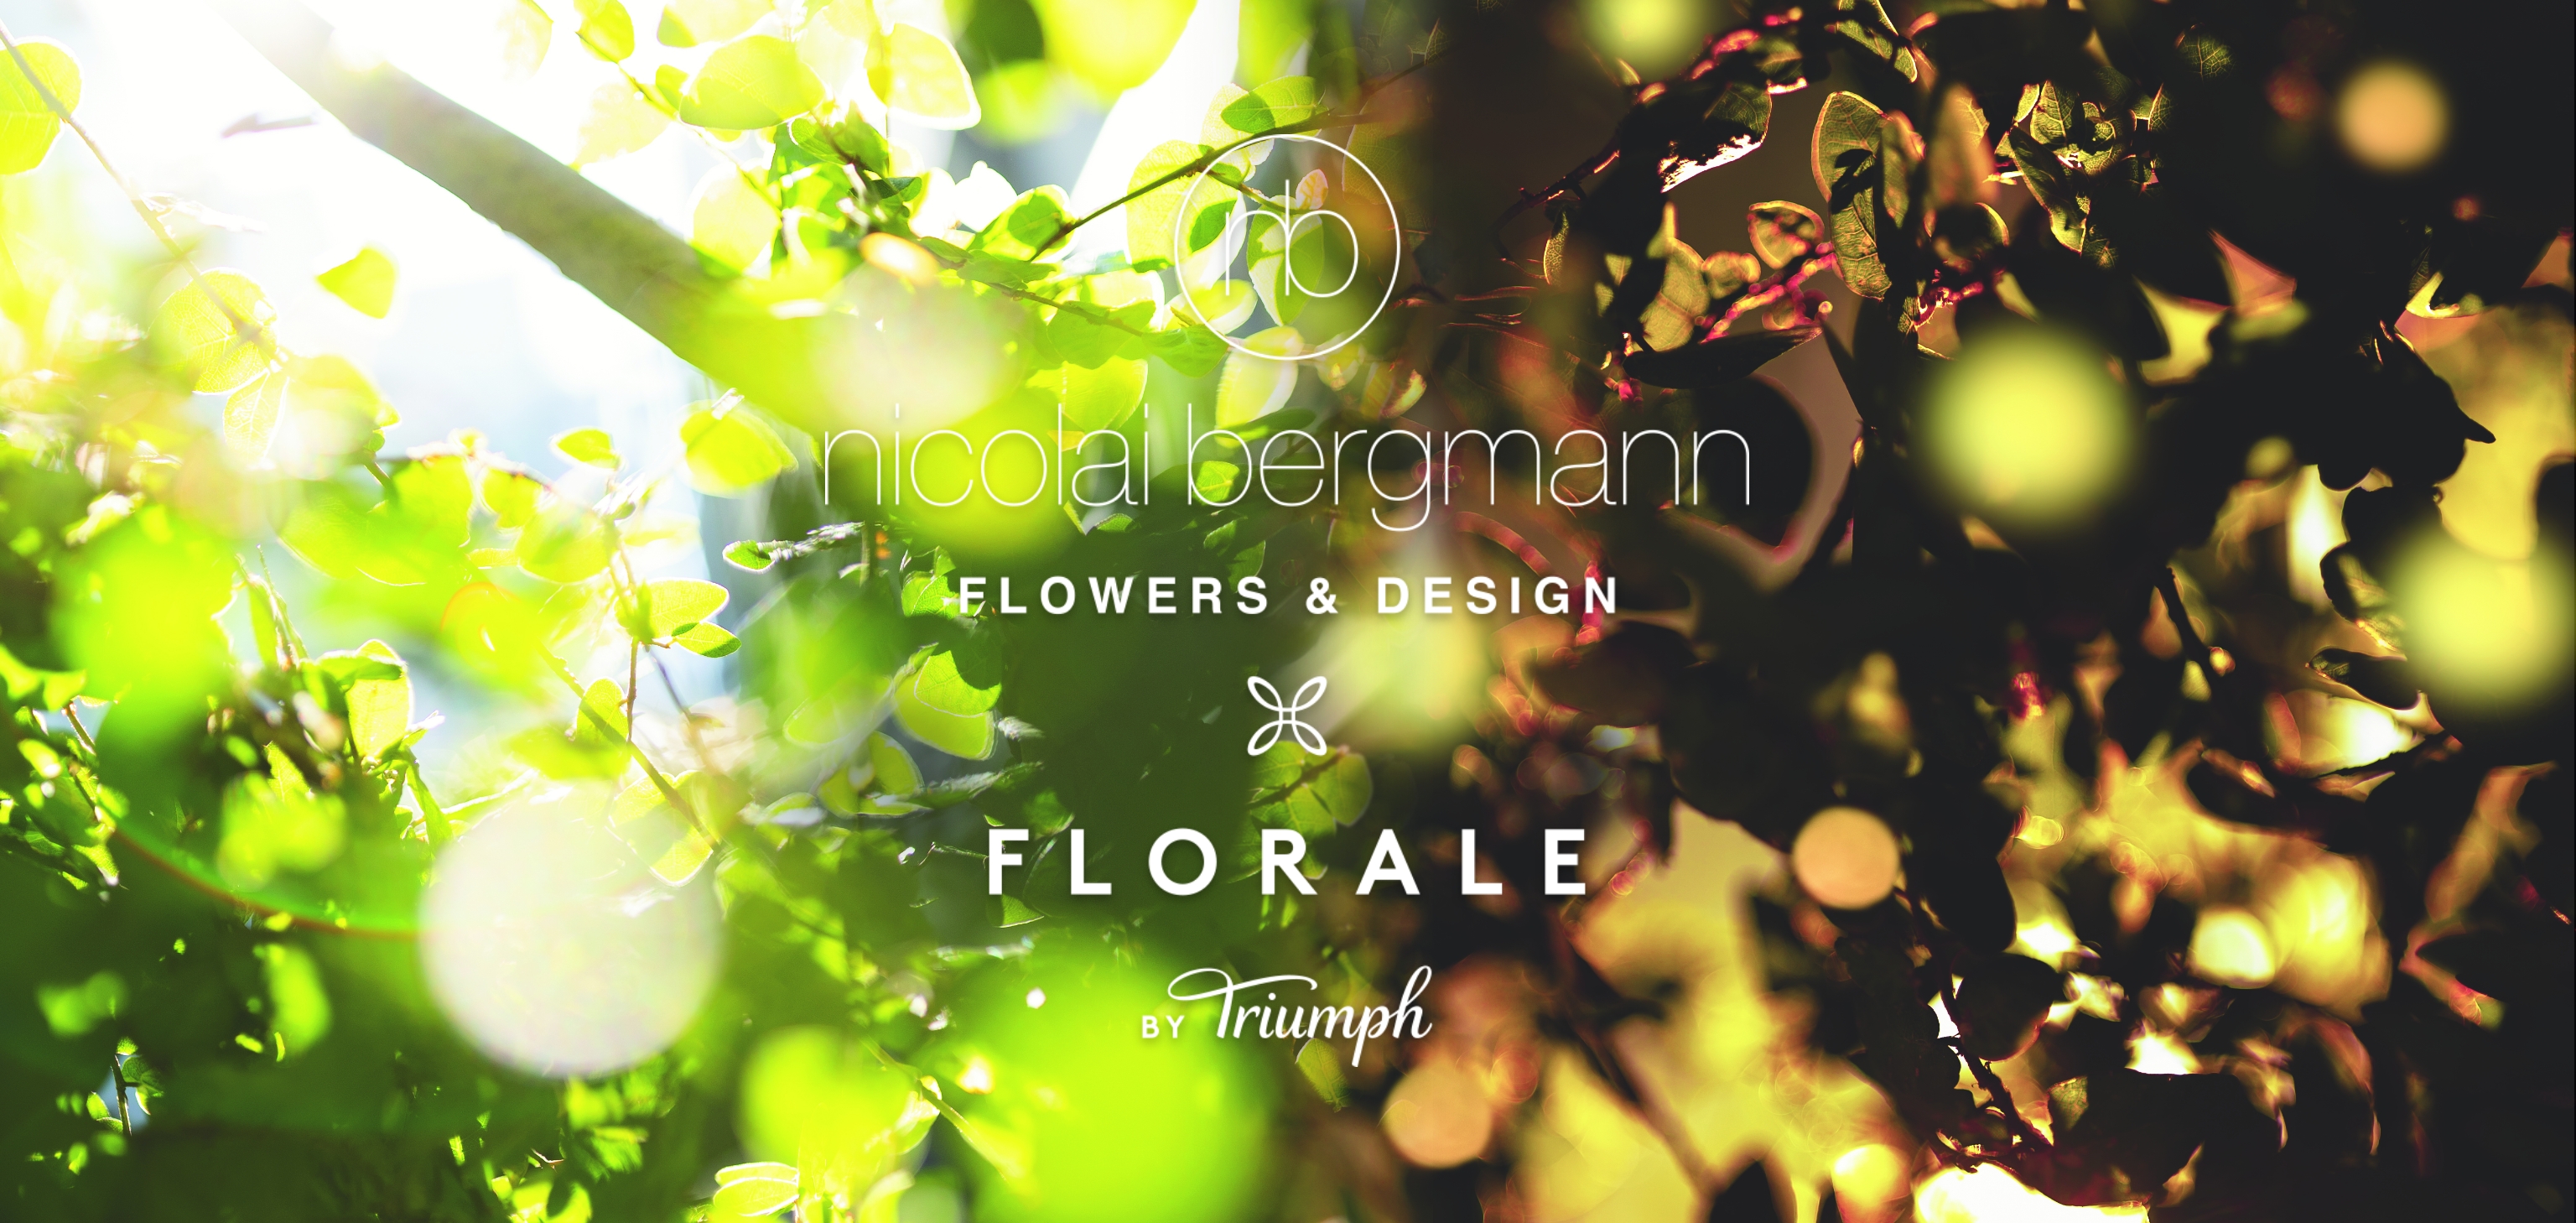 nicolai bergmann FLOWERS & DESIGN | FLORALE by Triumph